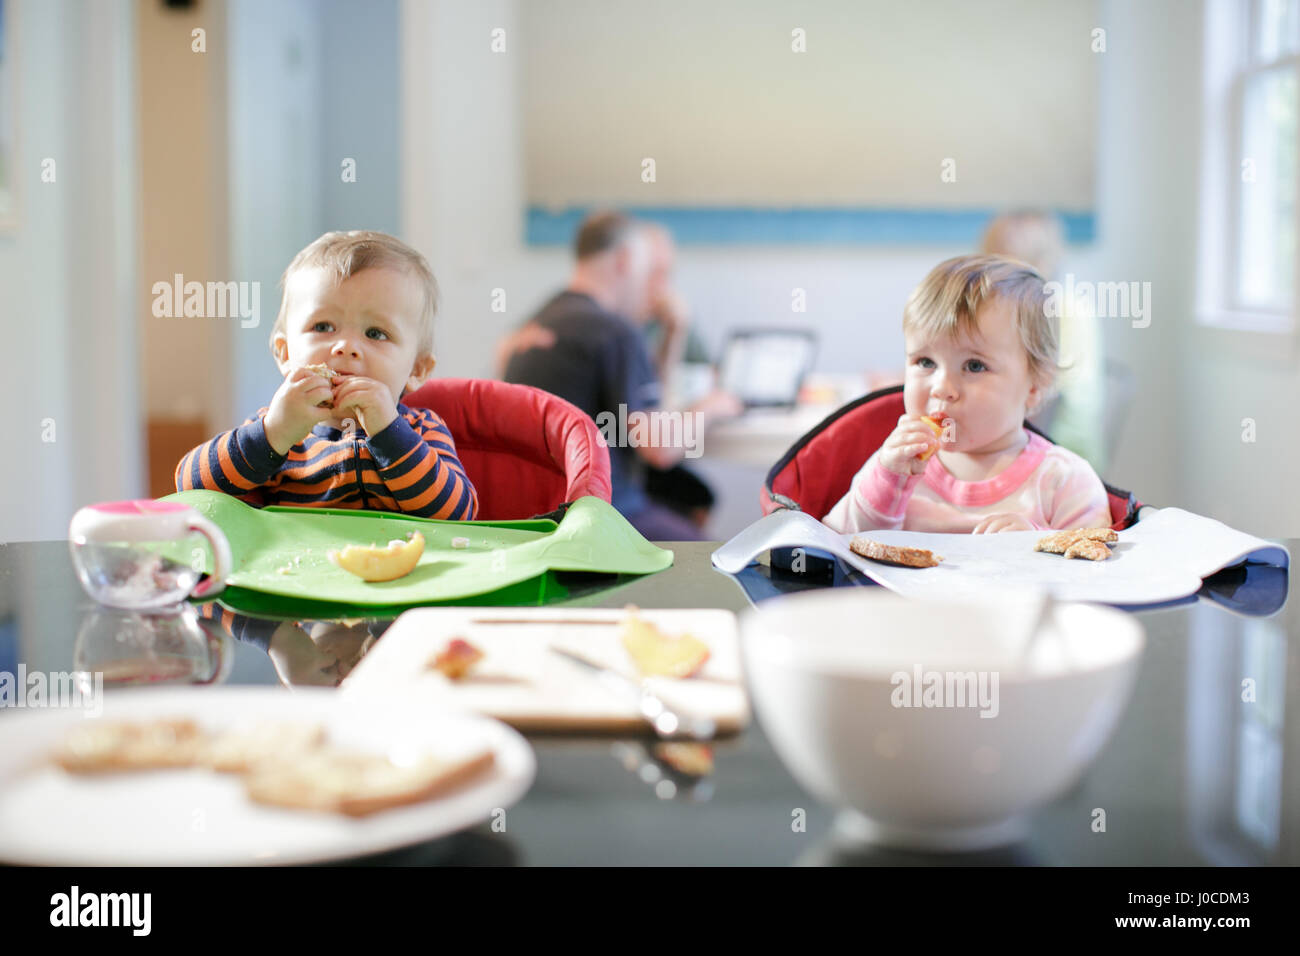 Männliche und weibliche Kleinkinder am Küchentisch zu frühstücken Stockfoto